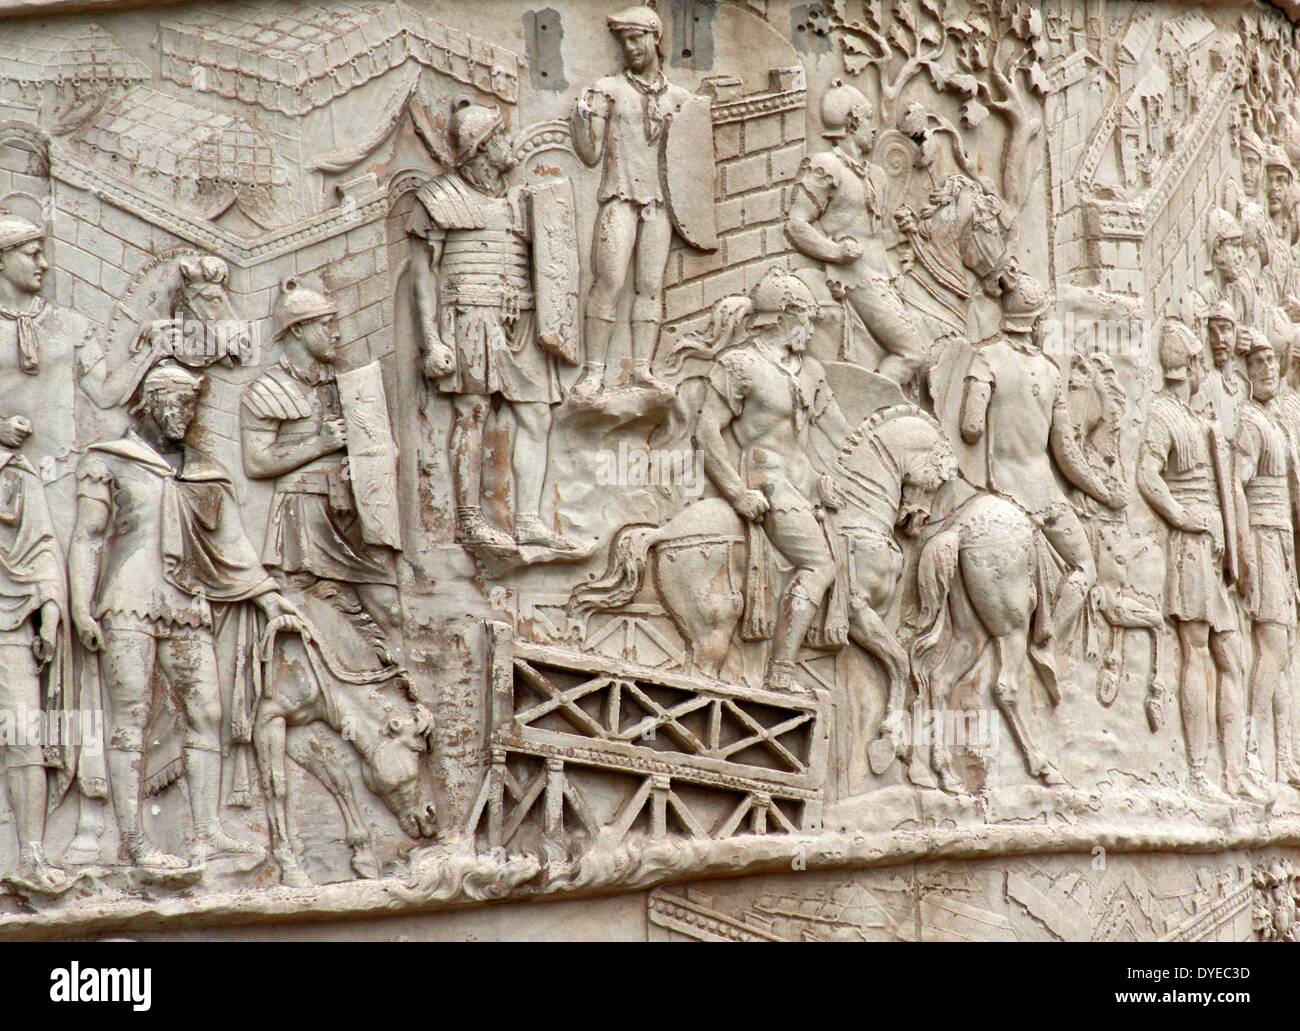 La colonne Trajane est une colonne romaine commémorant l'empereur romain Trajan's victoire dans la guerre des Daces. Situé dans le Forum de Trajan, au nord du Forum Romain. Le bas-relief en spirale artistiquement décrit les batailles épiques entre les Romains et les Daces. Achevée en 113 AD. Rome. Italie 2013 Banque D'Images